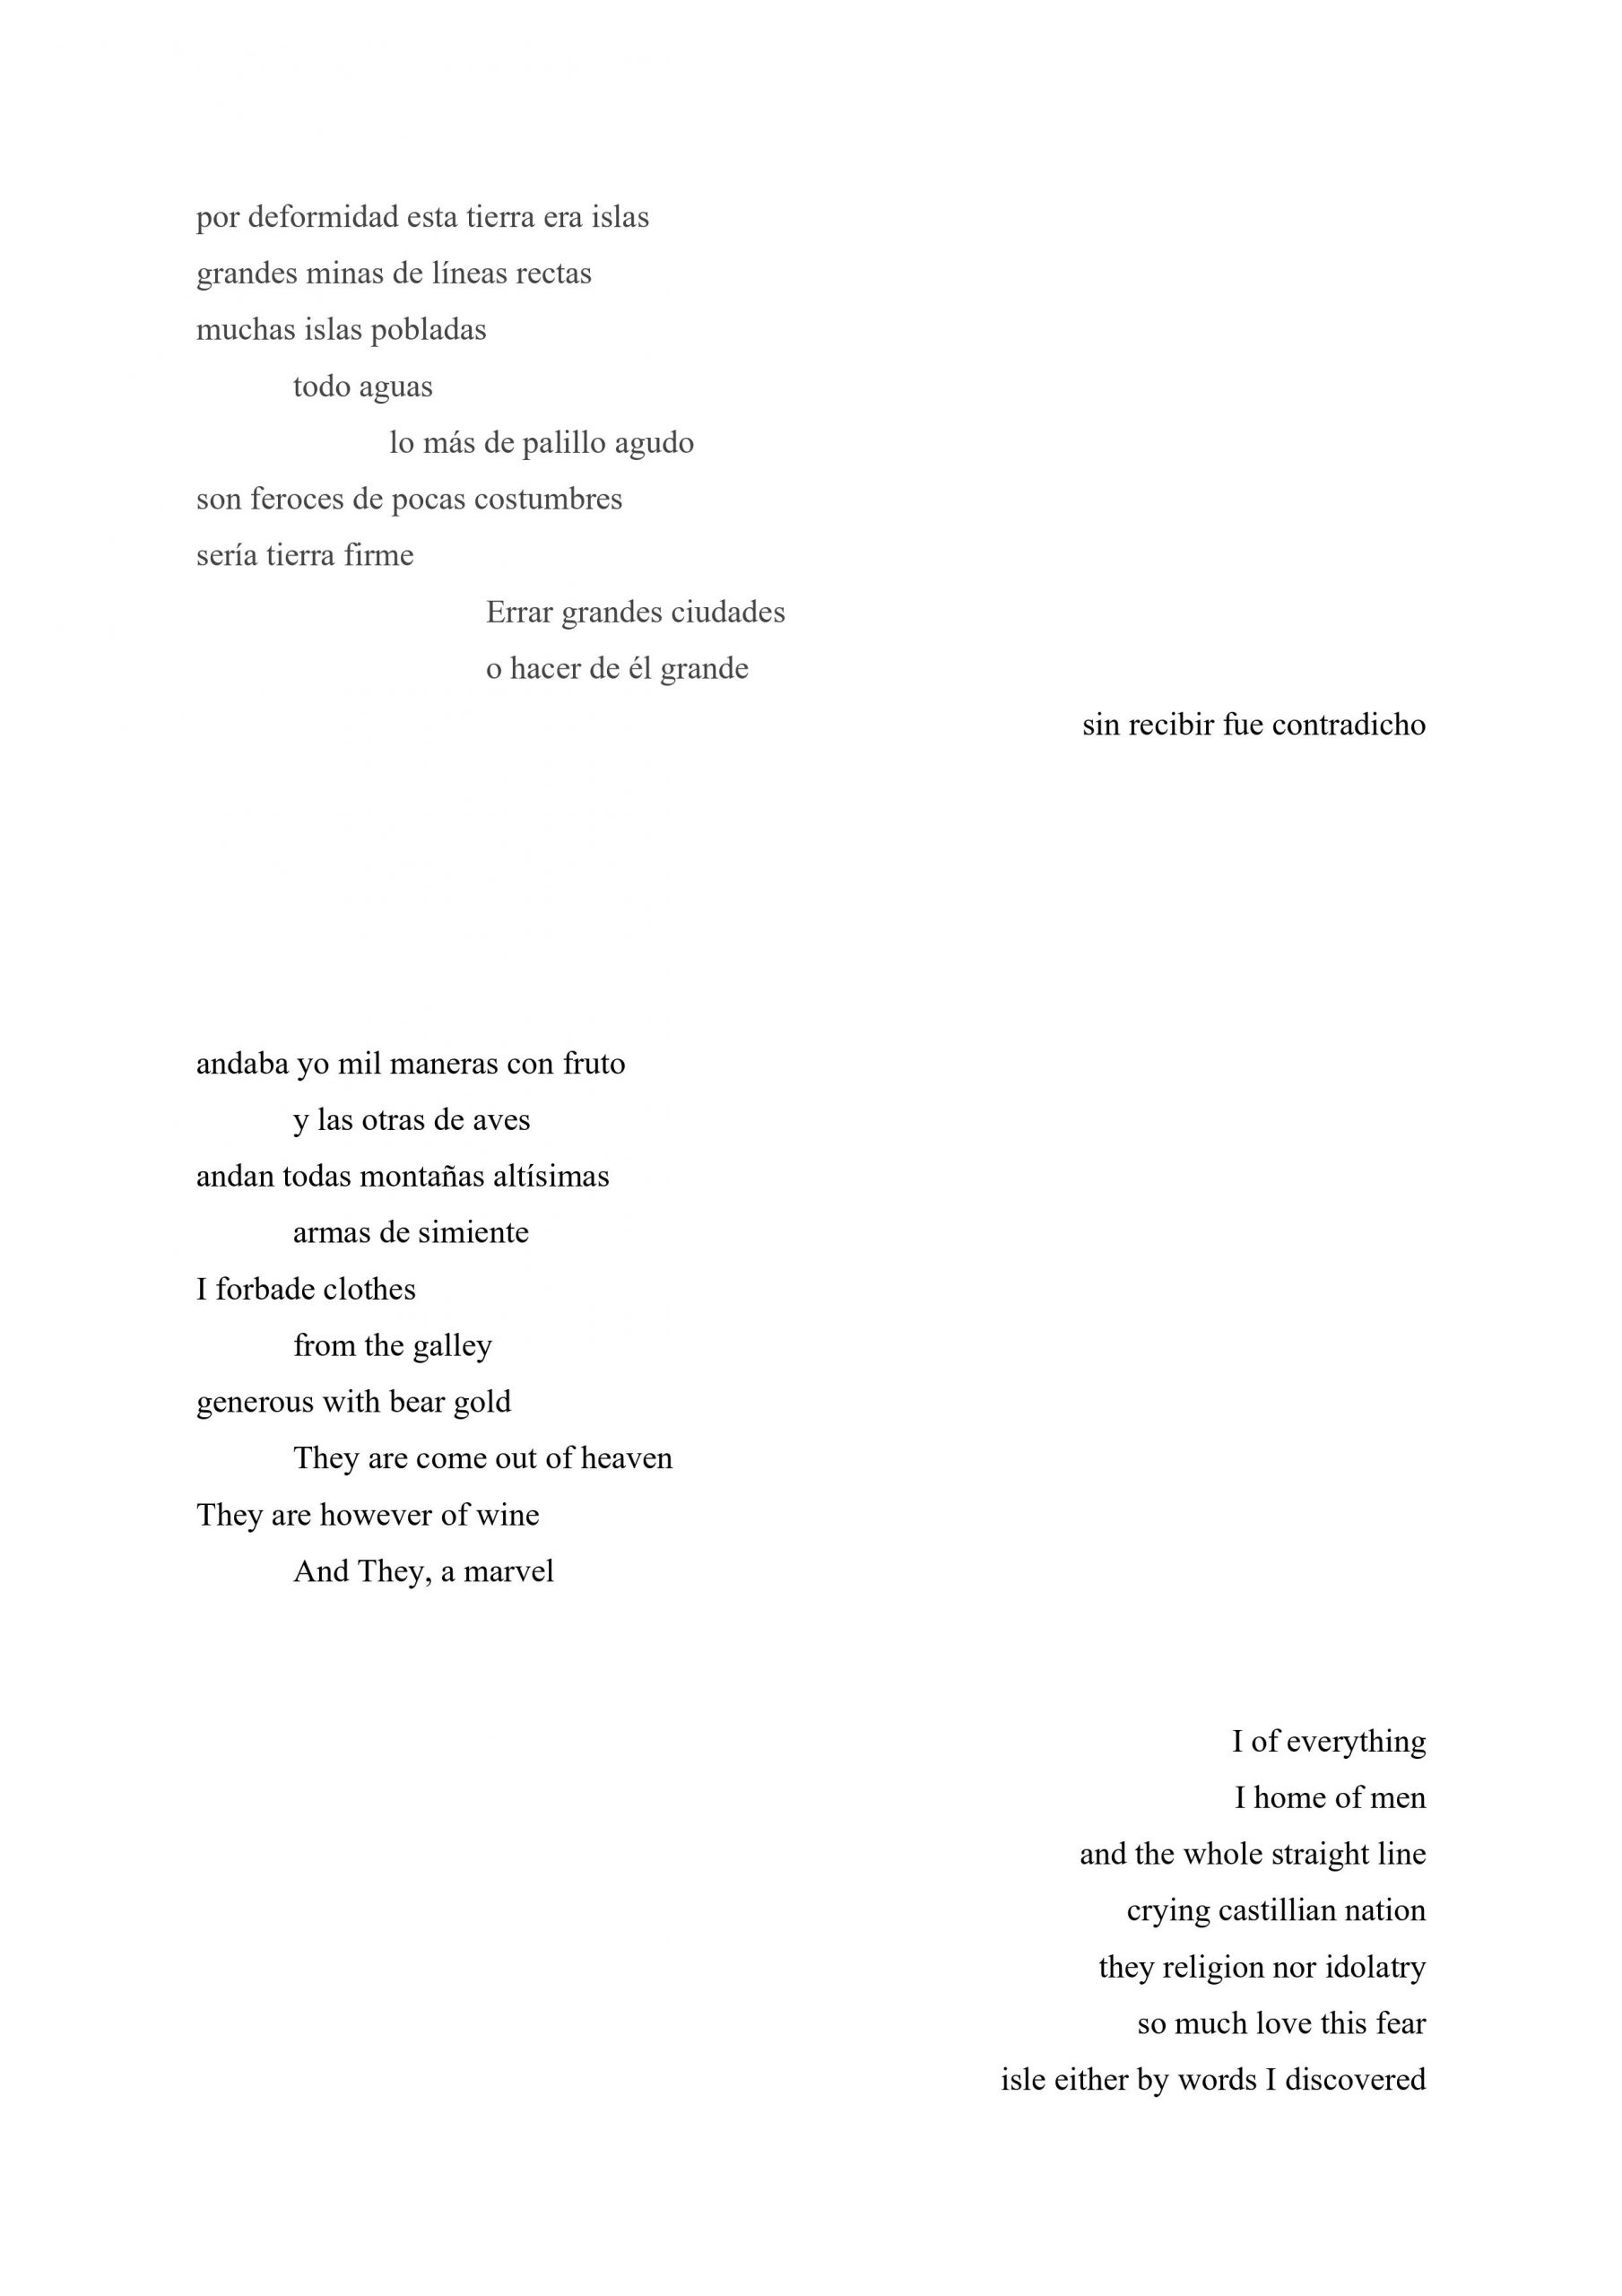 Poem by Jose Gabriel Figueroa Carle